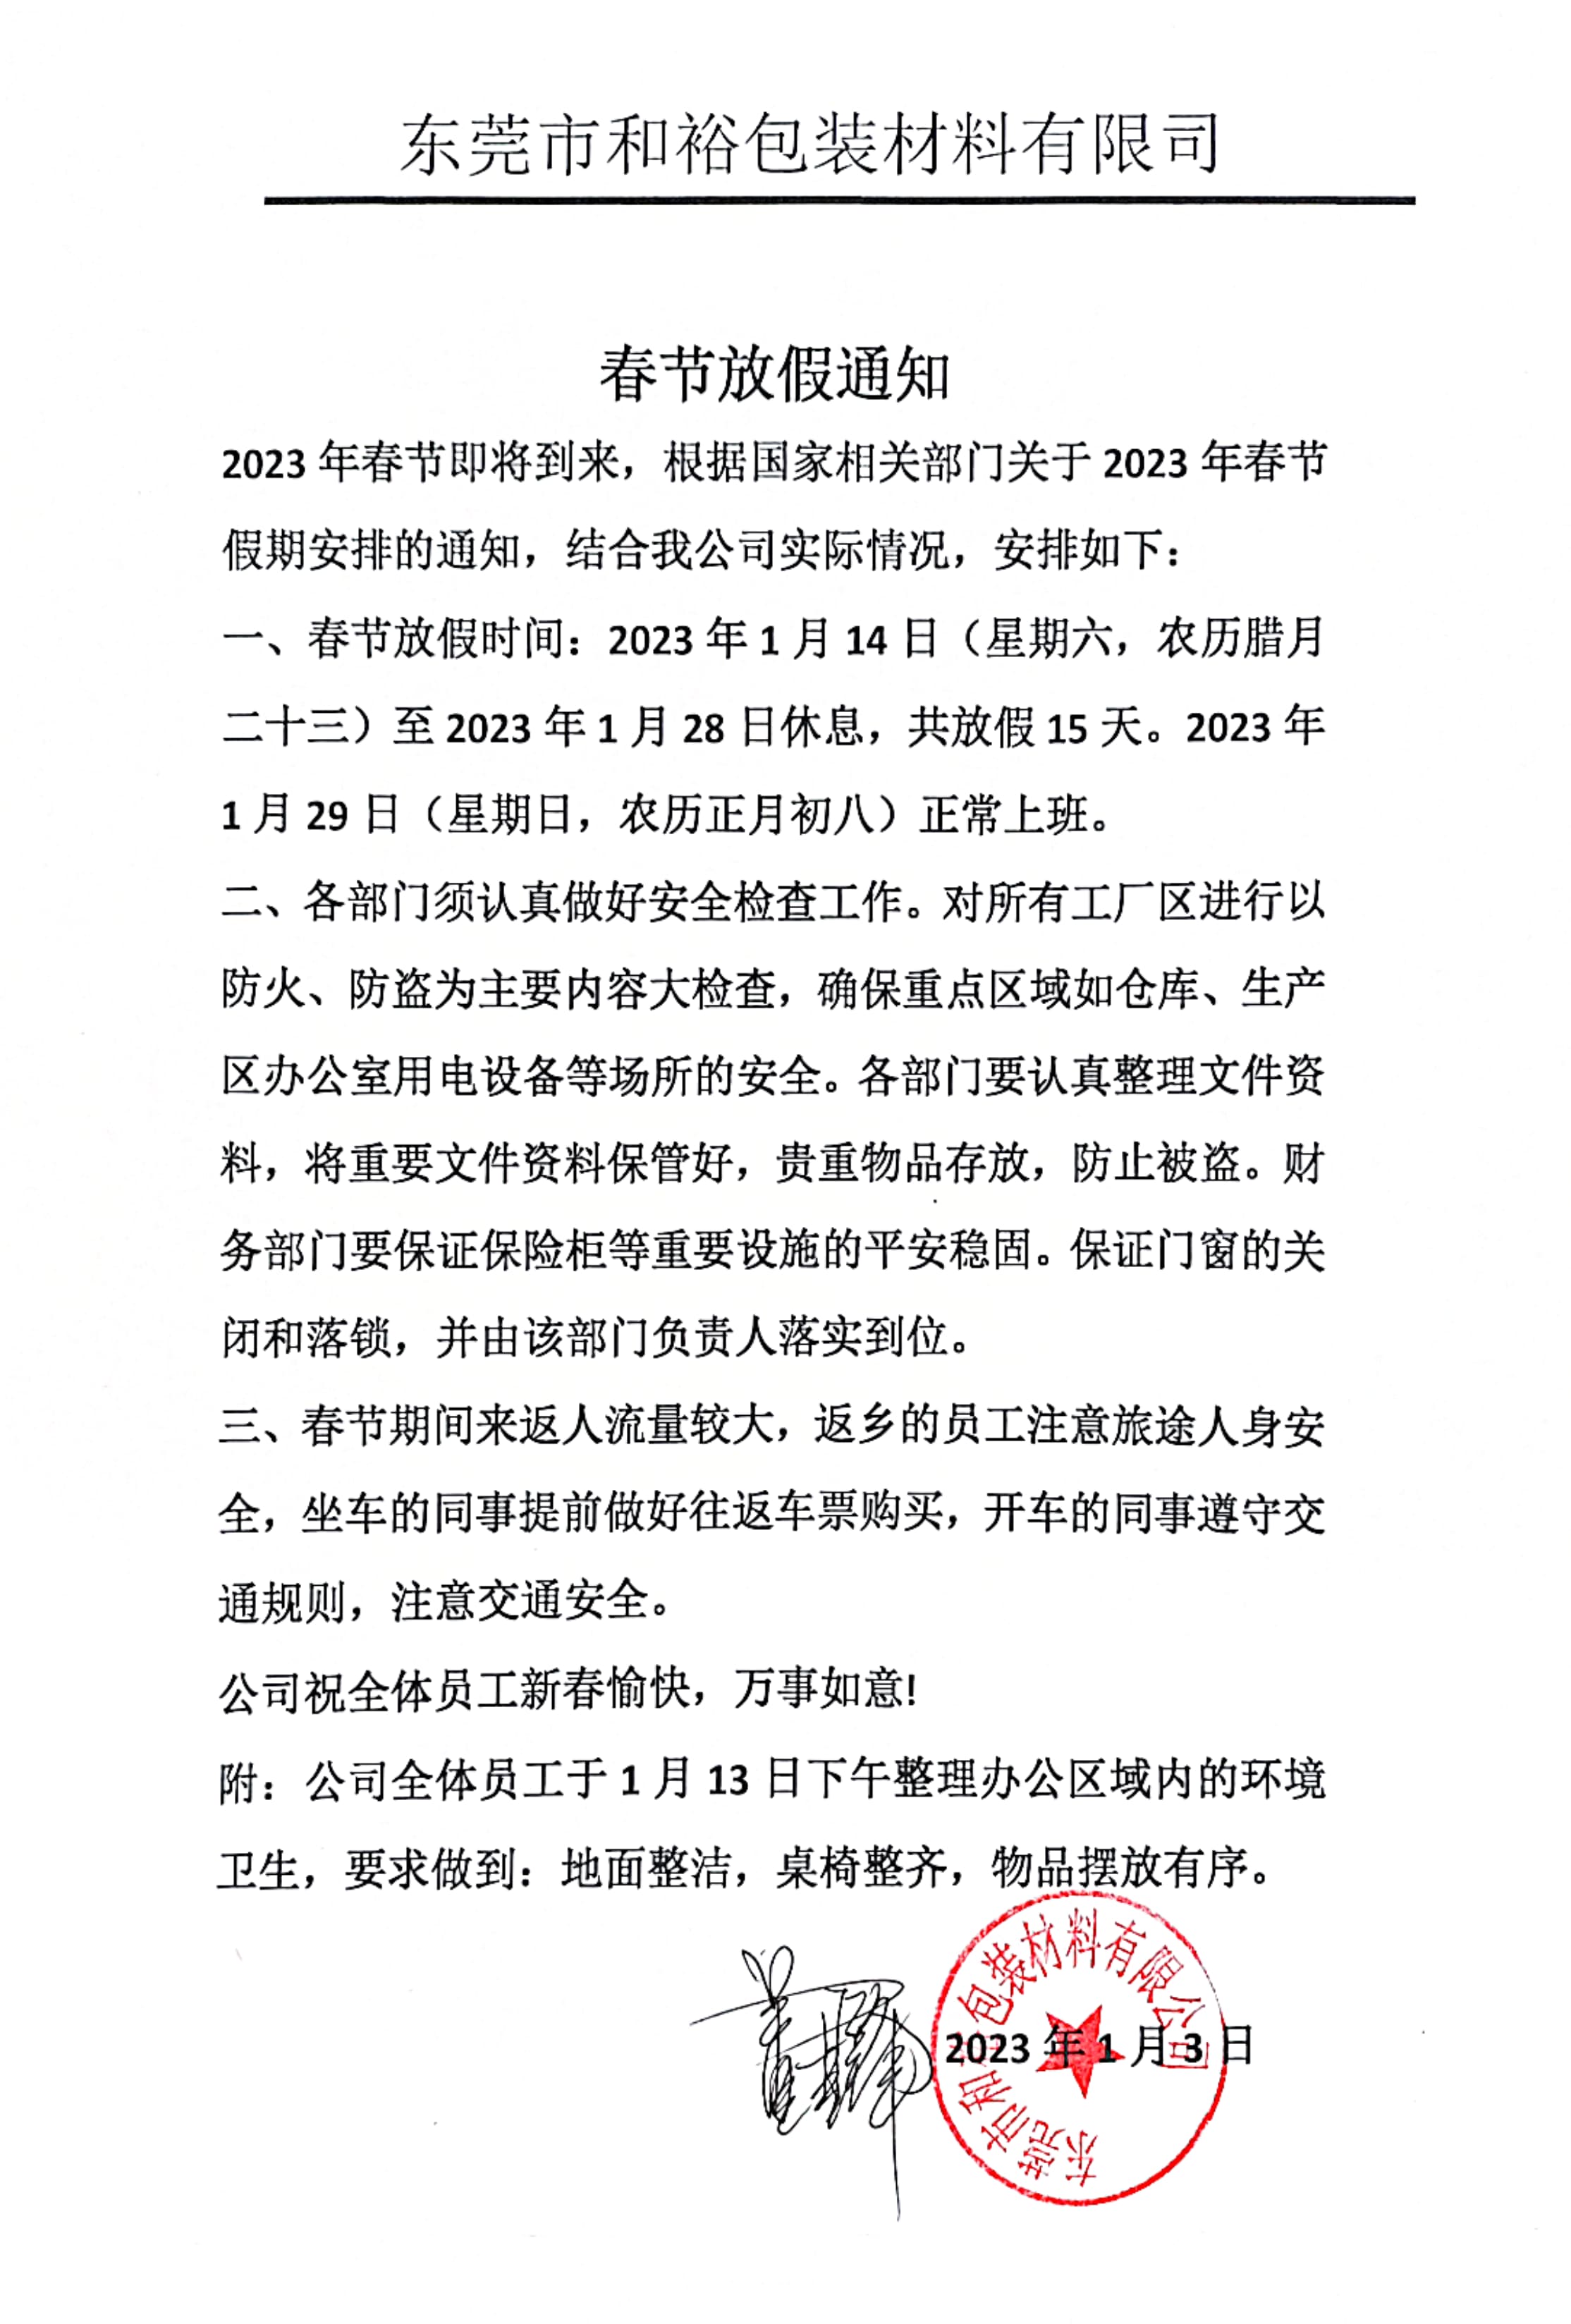 遂宁市2023年和裕包装春节放假通知